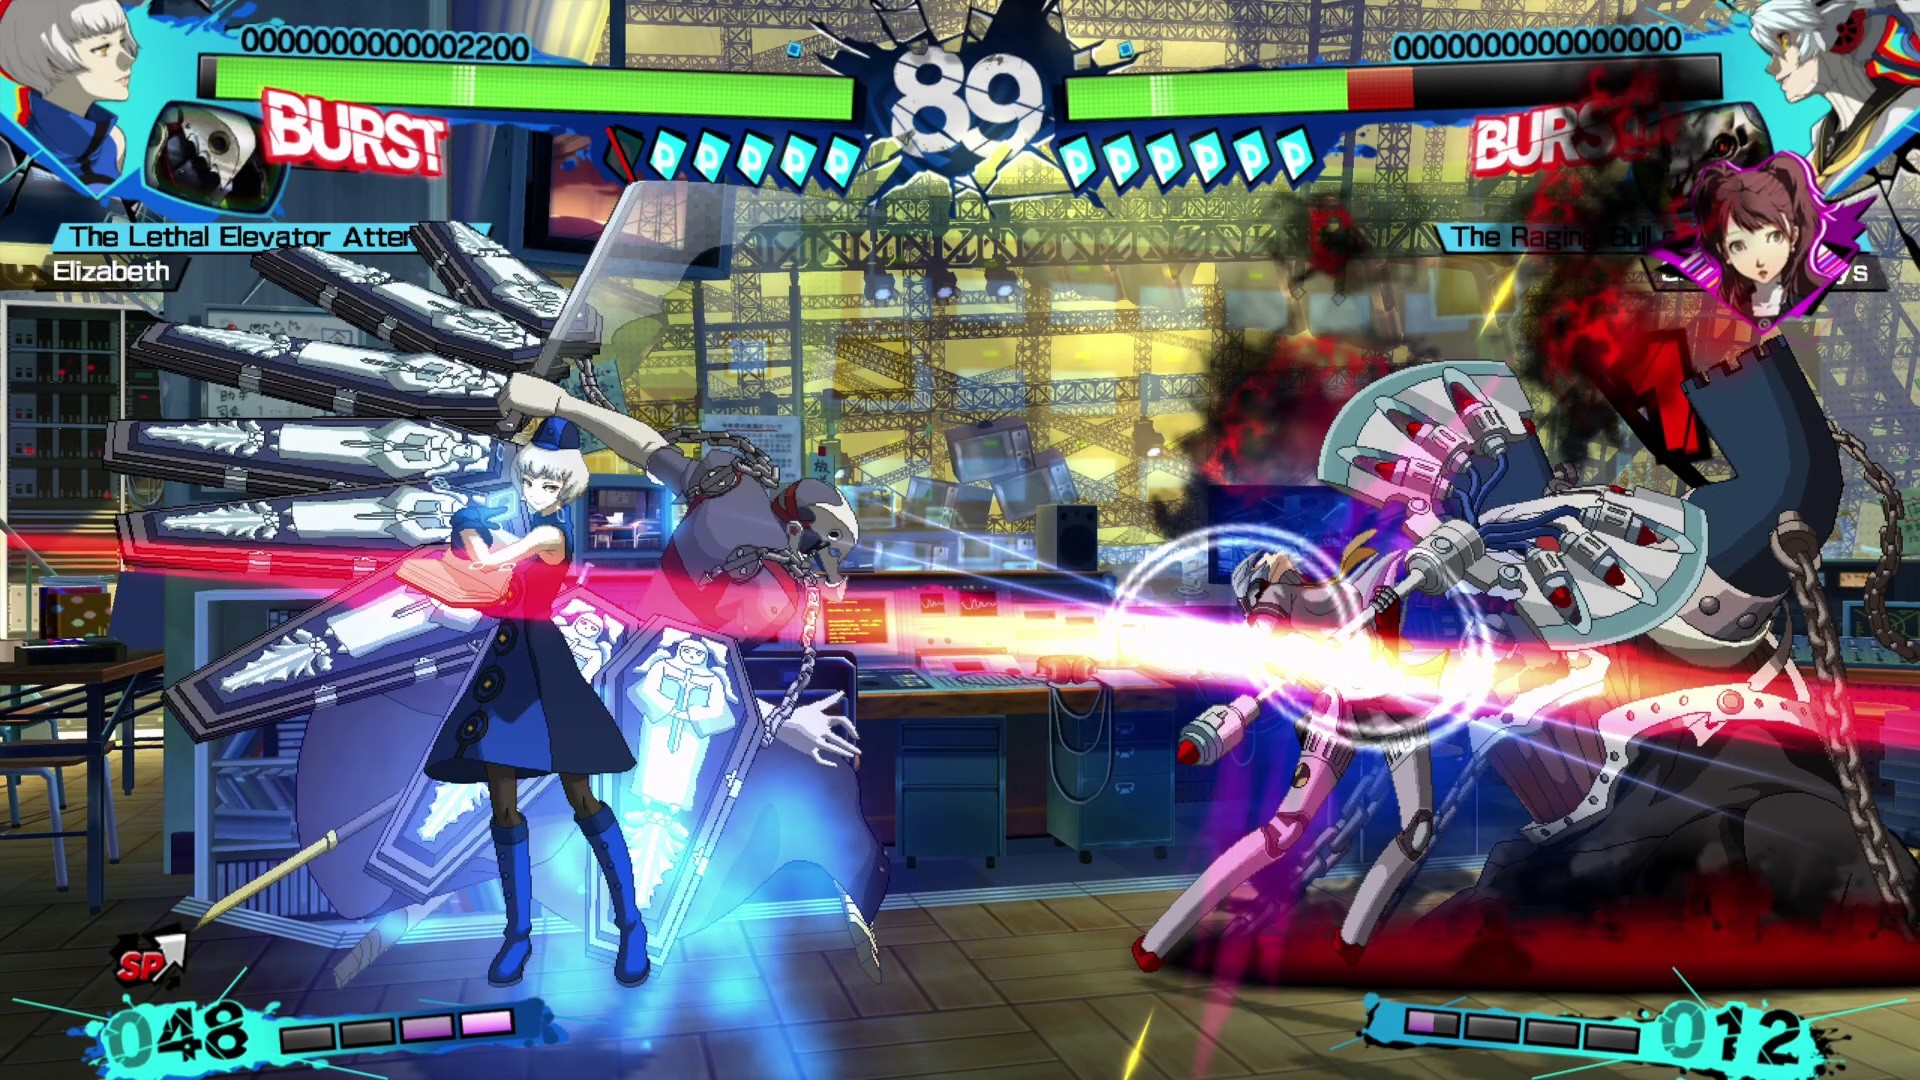 Persona 4 Arena Ultimax screenshot 2